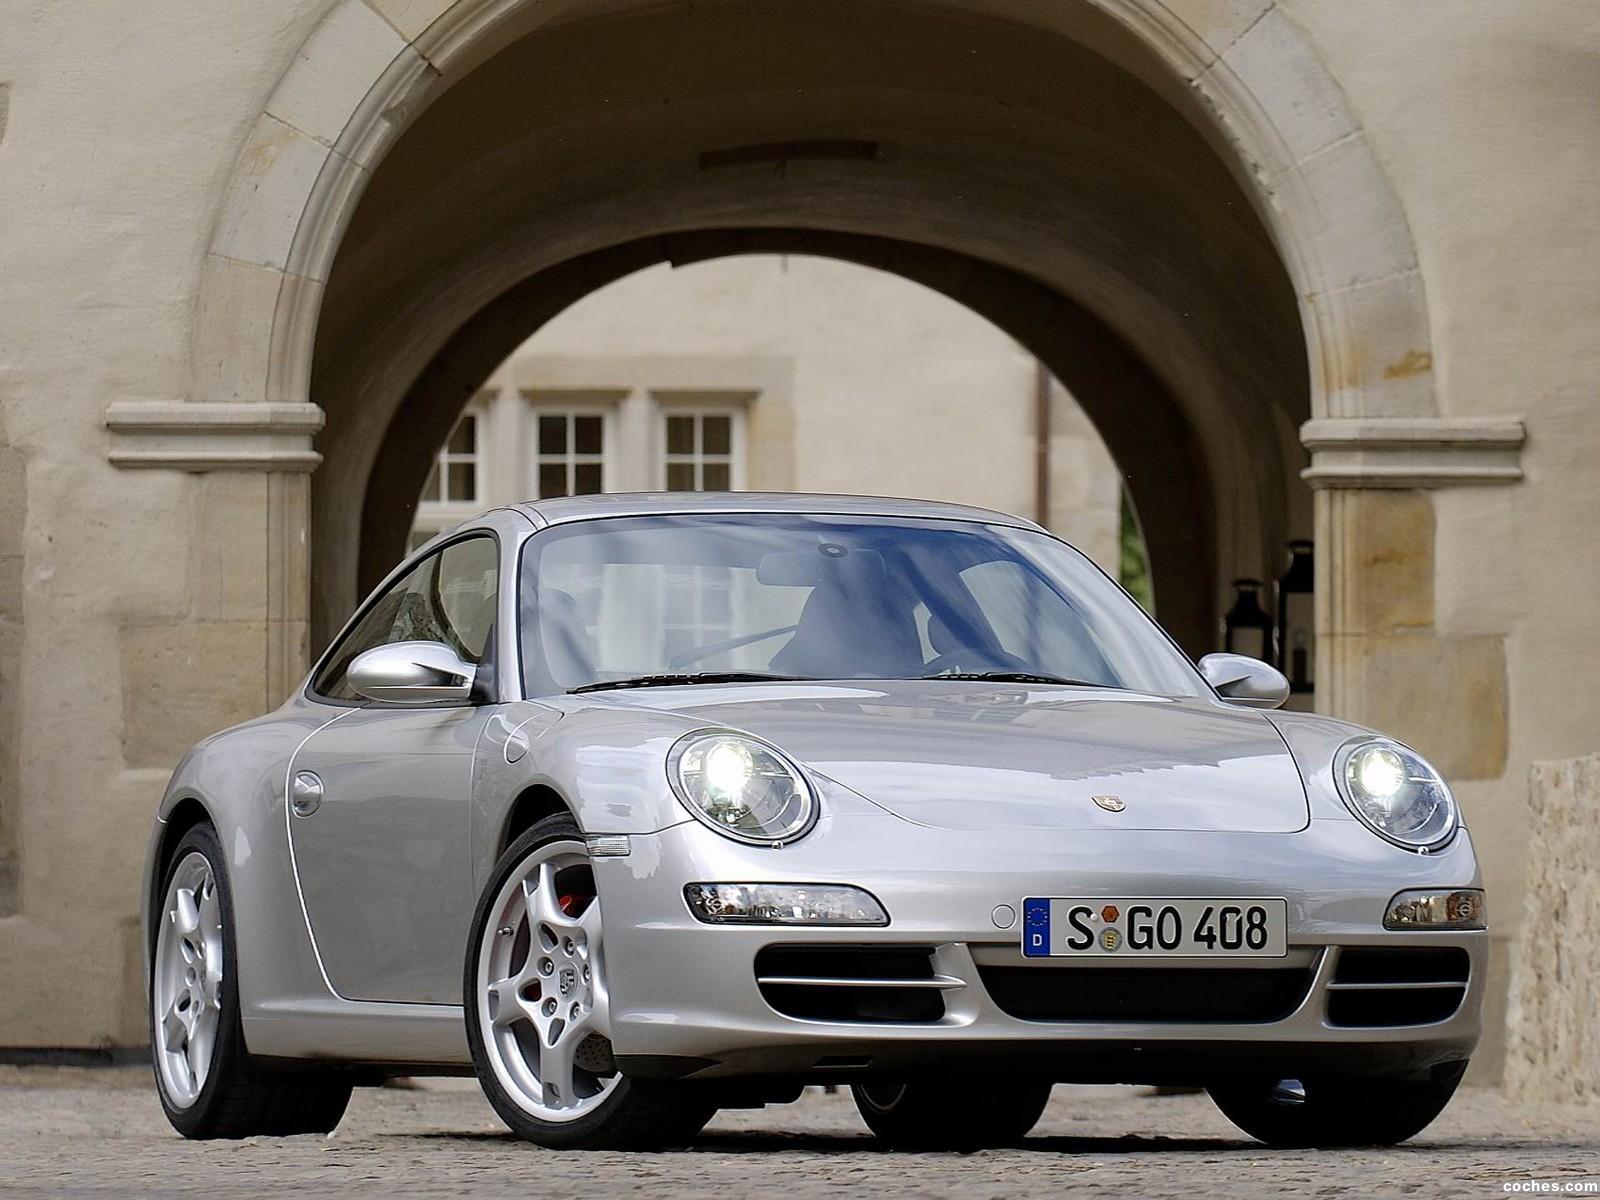 Порше чей производитель. Porsche 911 Carrera 997. Порше 911 997. Порше 997 Каррера. Porsche Carrera s 997.